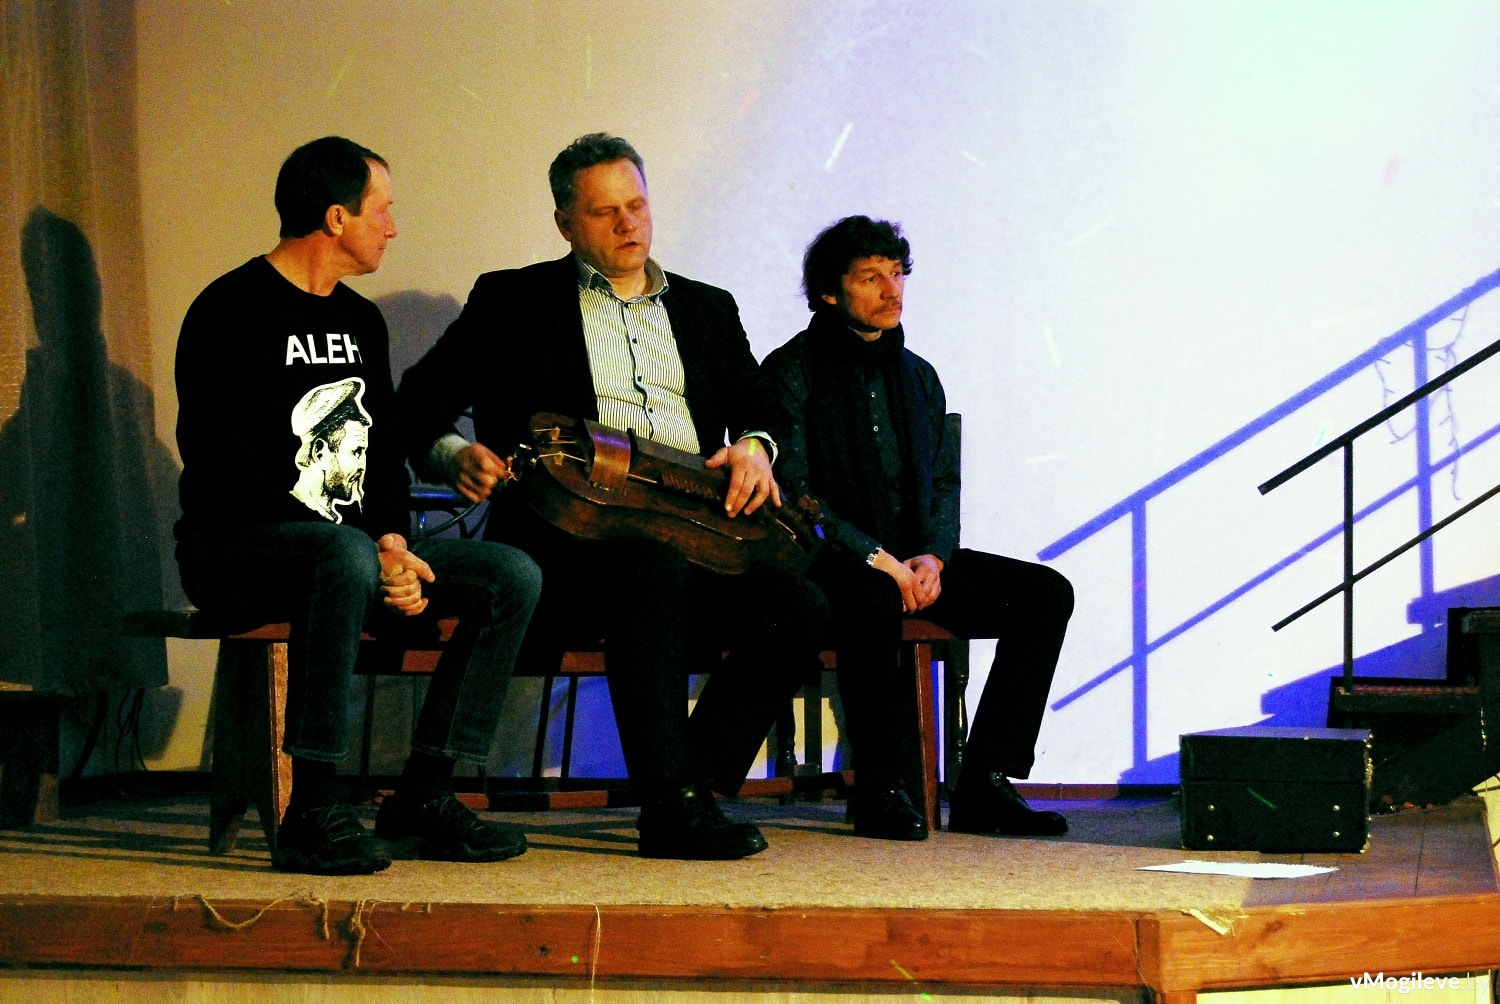 Злева направа: Алег Лук'янцаў, Алесь Жукоўскі, Васіль Мардачоў.
У руках Алеся колавая ліра